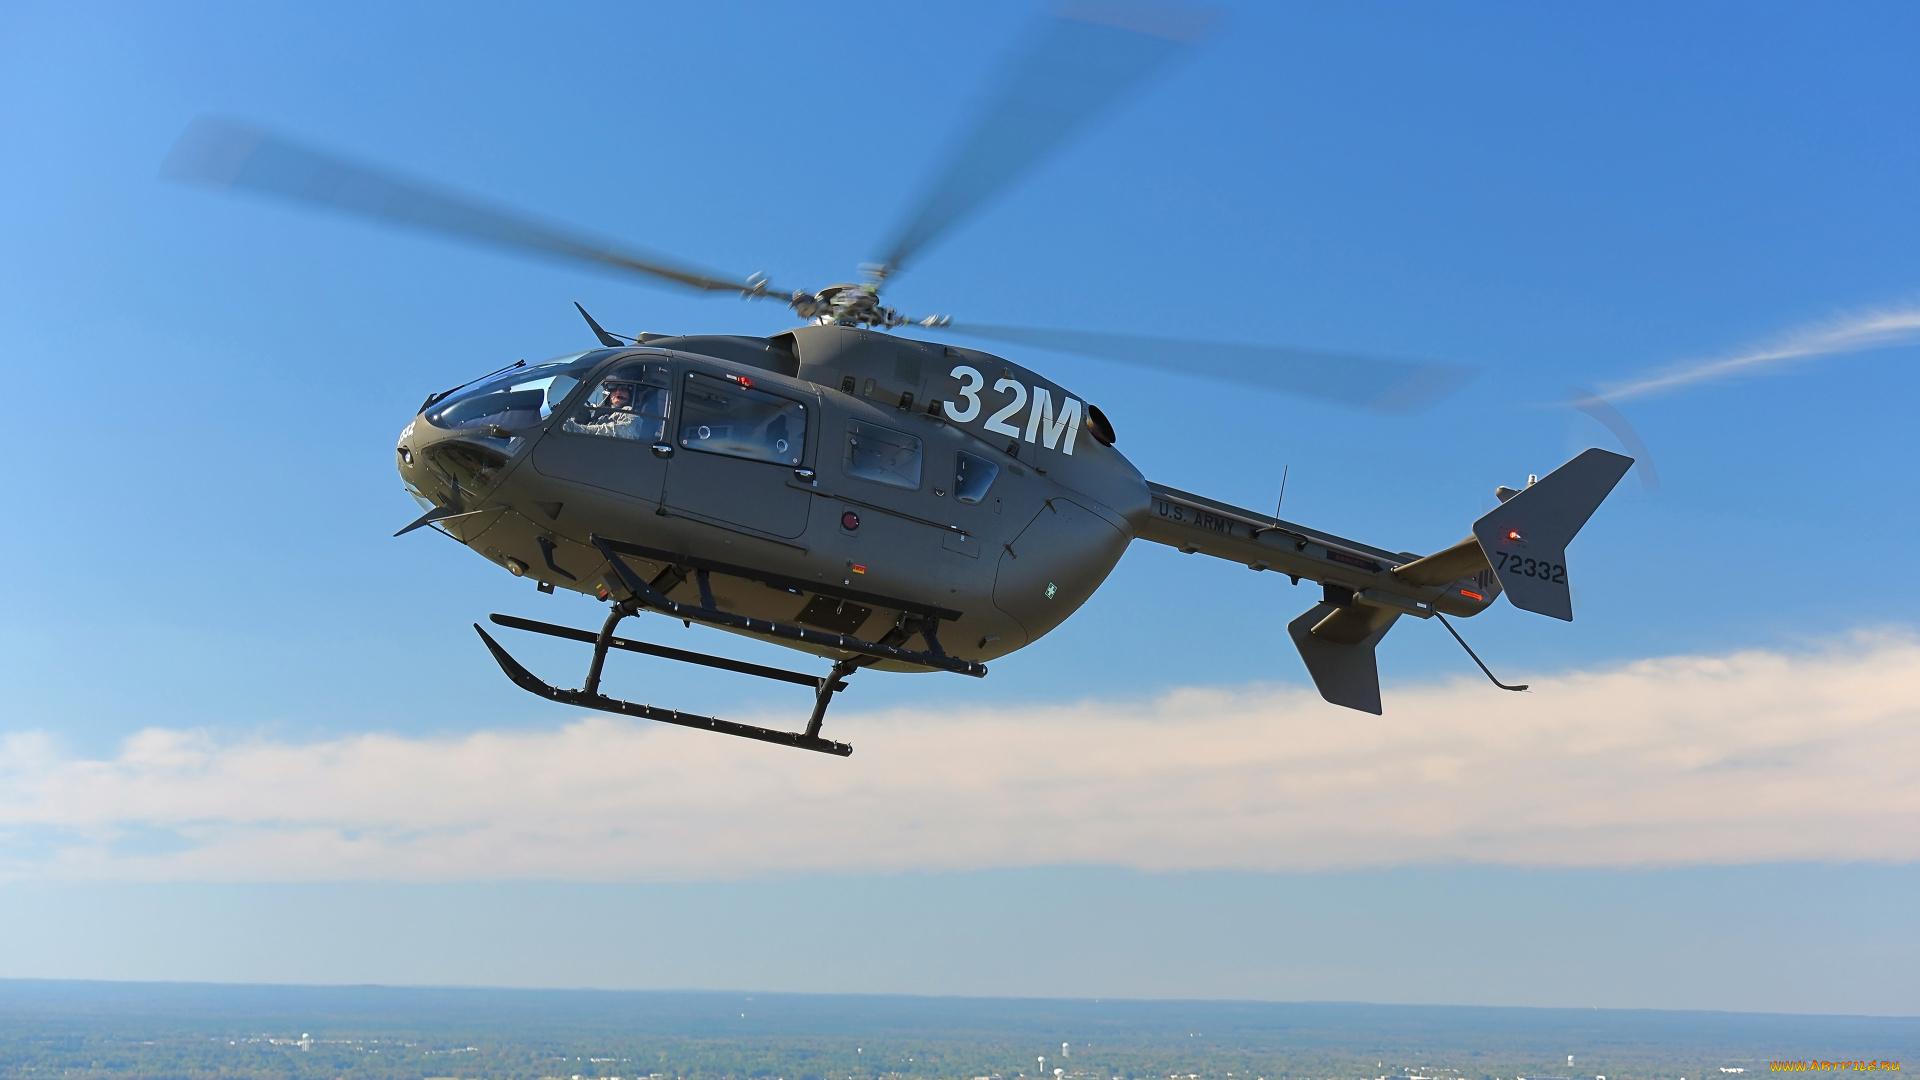 eurocopter, uh-72, lakota, авиация, вертолёты, военный, вертолет, ввс, сша, многоцелевой, легкий